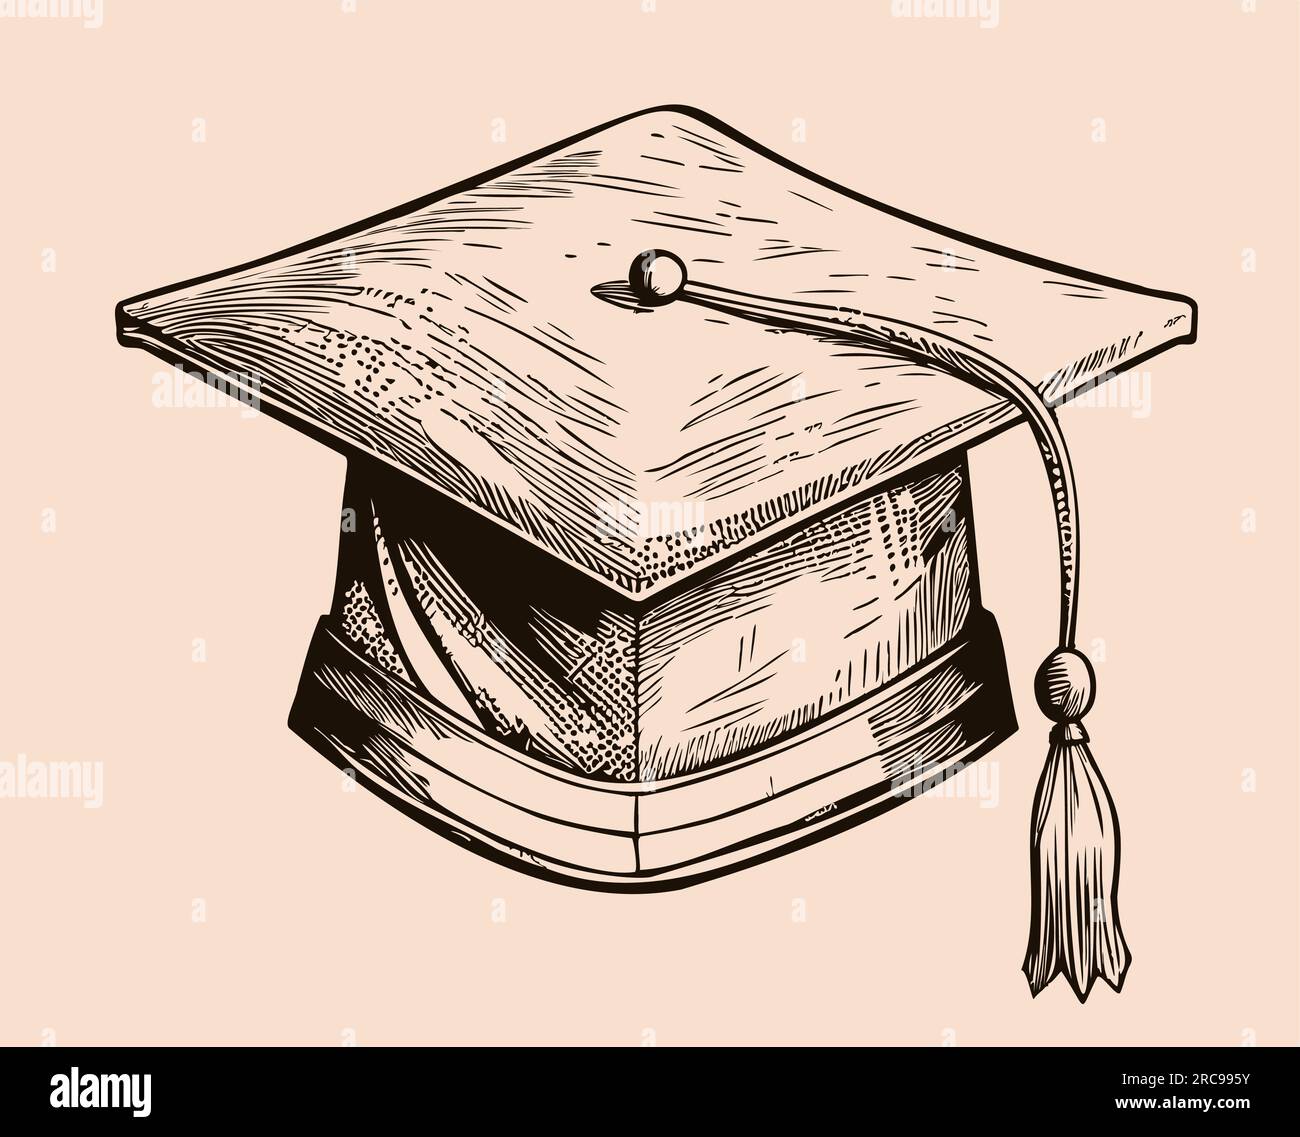 Disegno del cappello dello studente della laurea disegno a mano  illustrazione Immagine e Vettoriale - Alamy